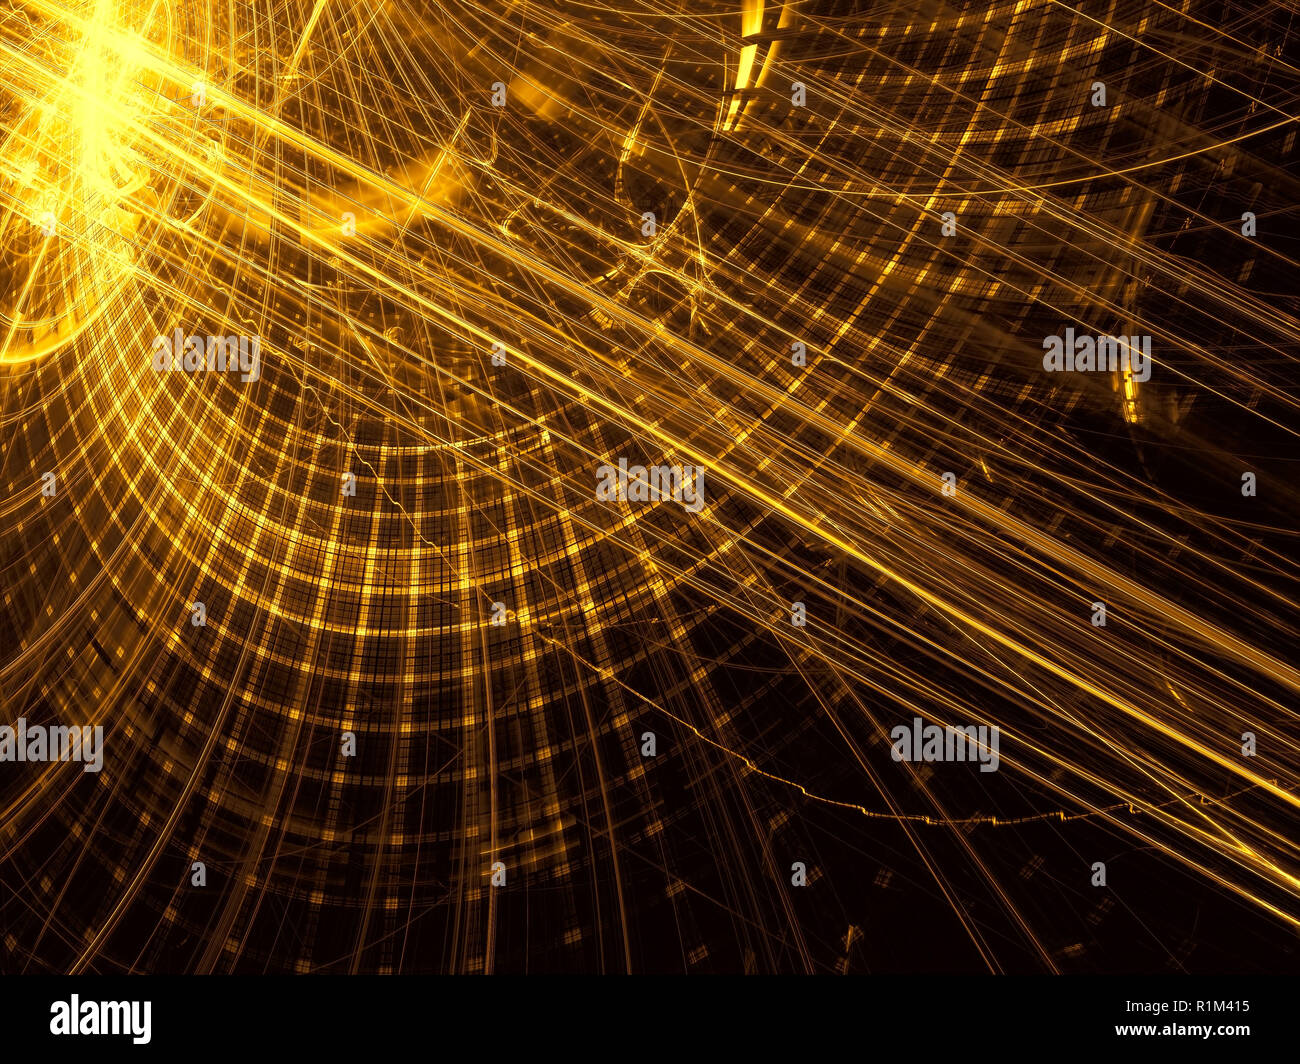 Fond doré - courbes, grille et les effets de lumière. Résumé de l'image générée par ordinateur - fractal. Pour les bannières, flyers, affiches. Banque D'Images